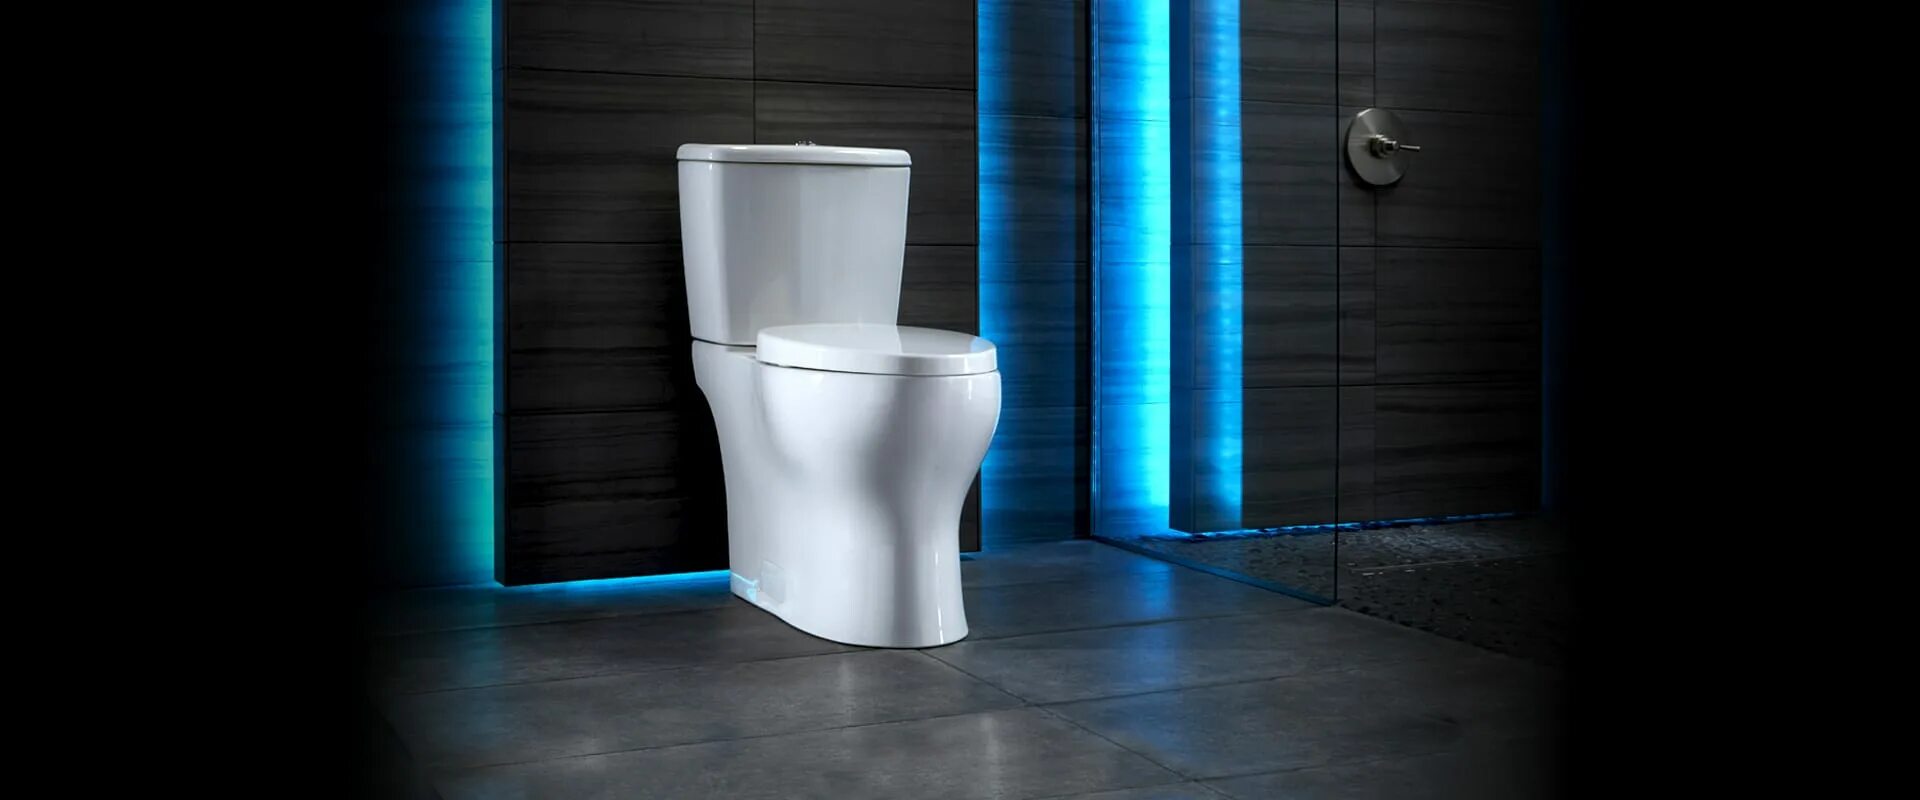 Унитаз geberit напольный. Унитазы Flush Smart Toilet. Унитаз Niagara Vista ng-9301. Красивый унитаз в интерьере.